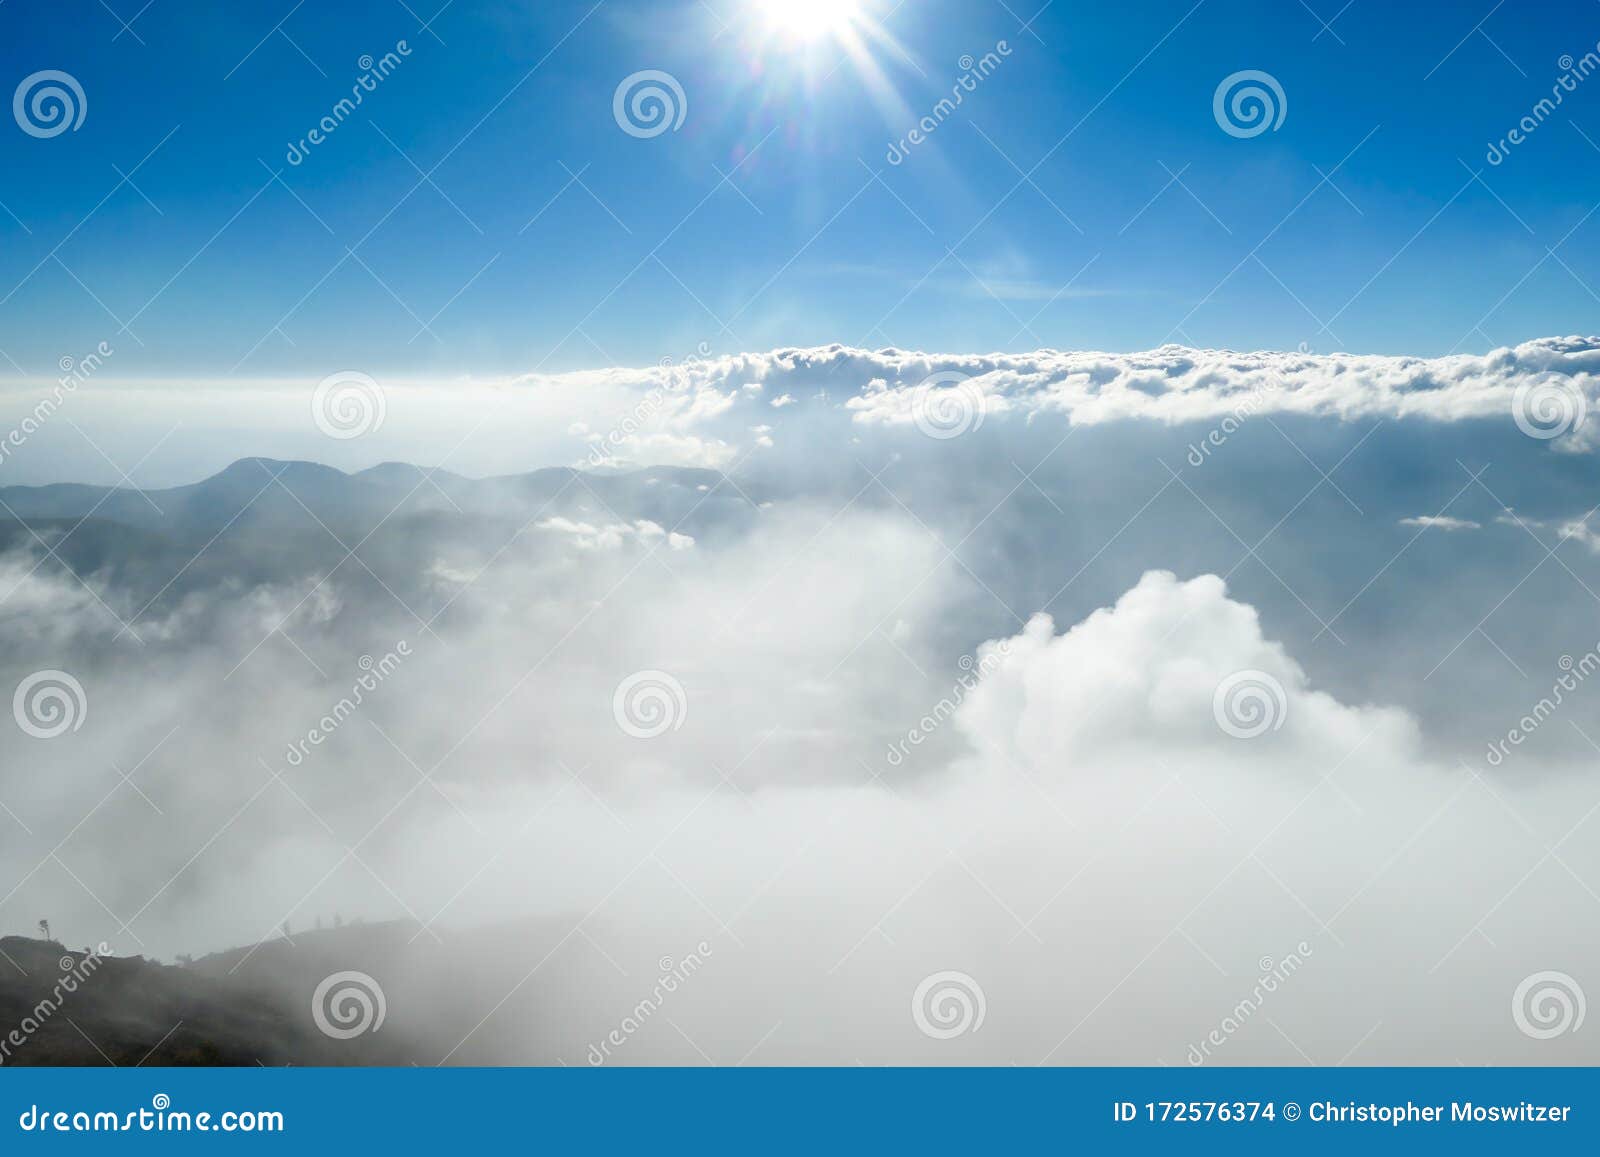 bajawa - sun shining above the clouds